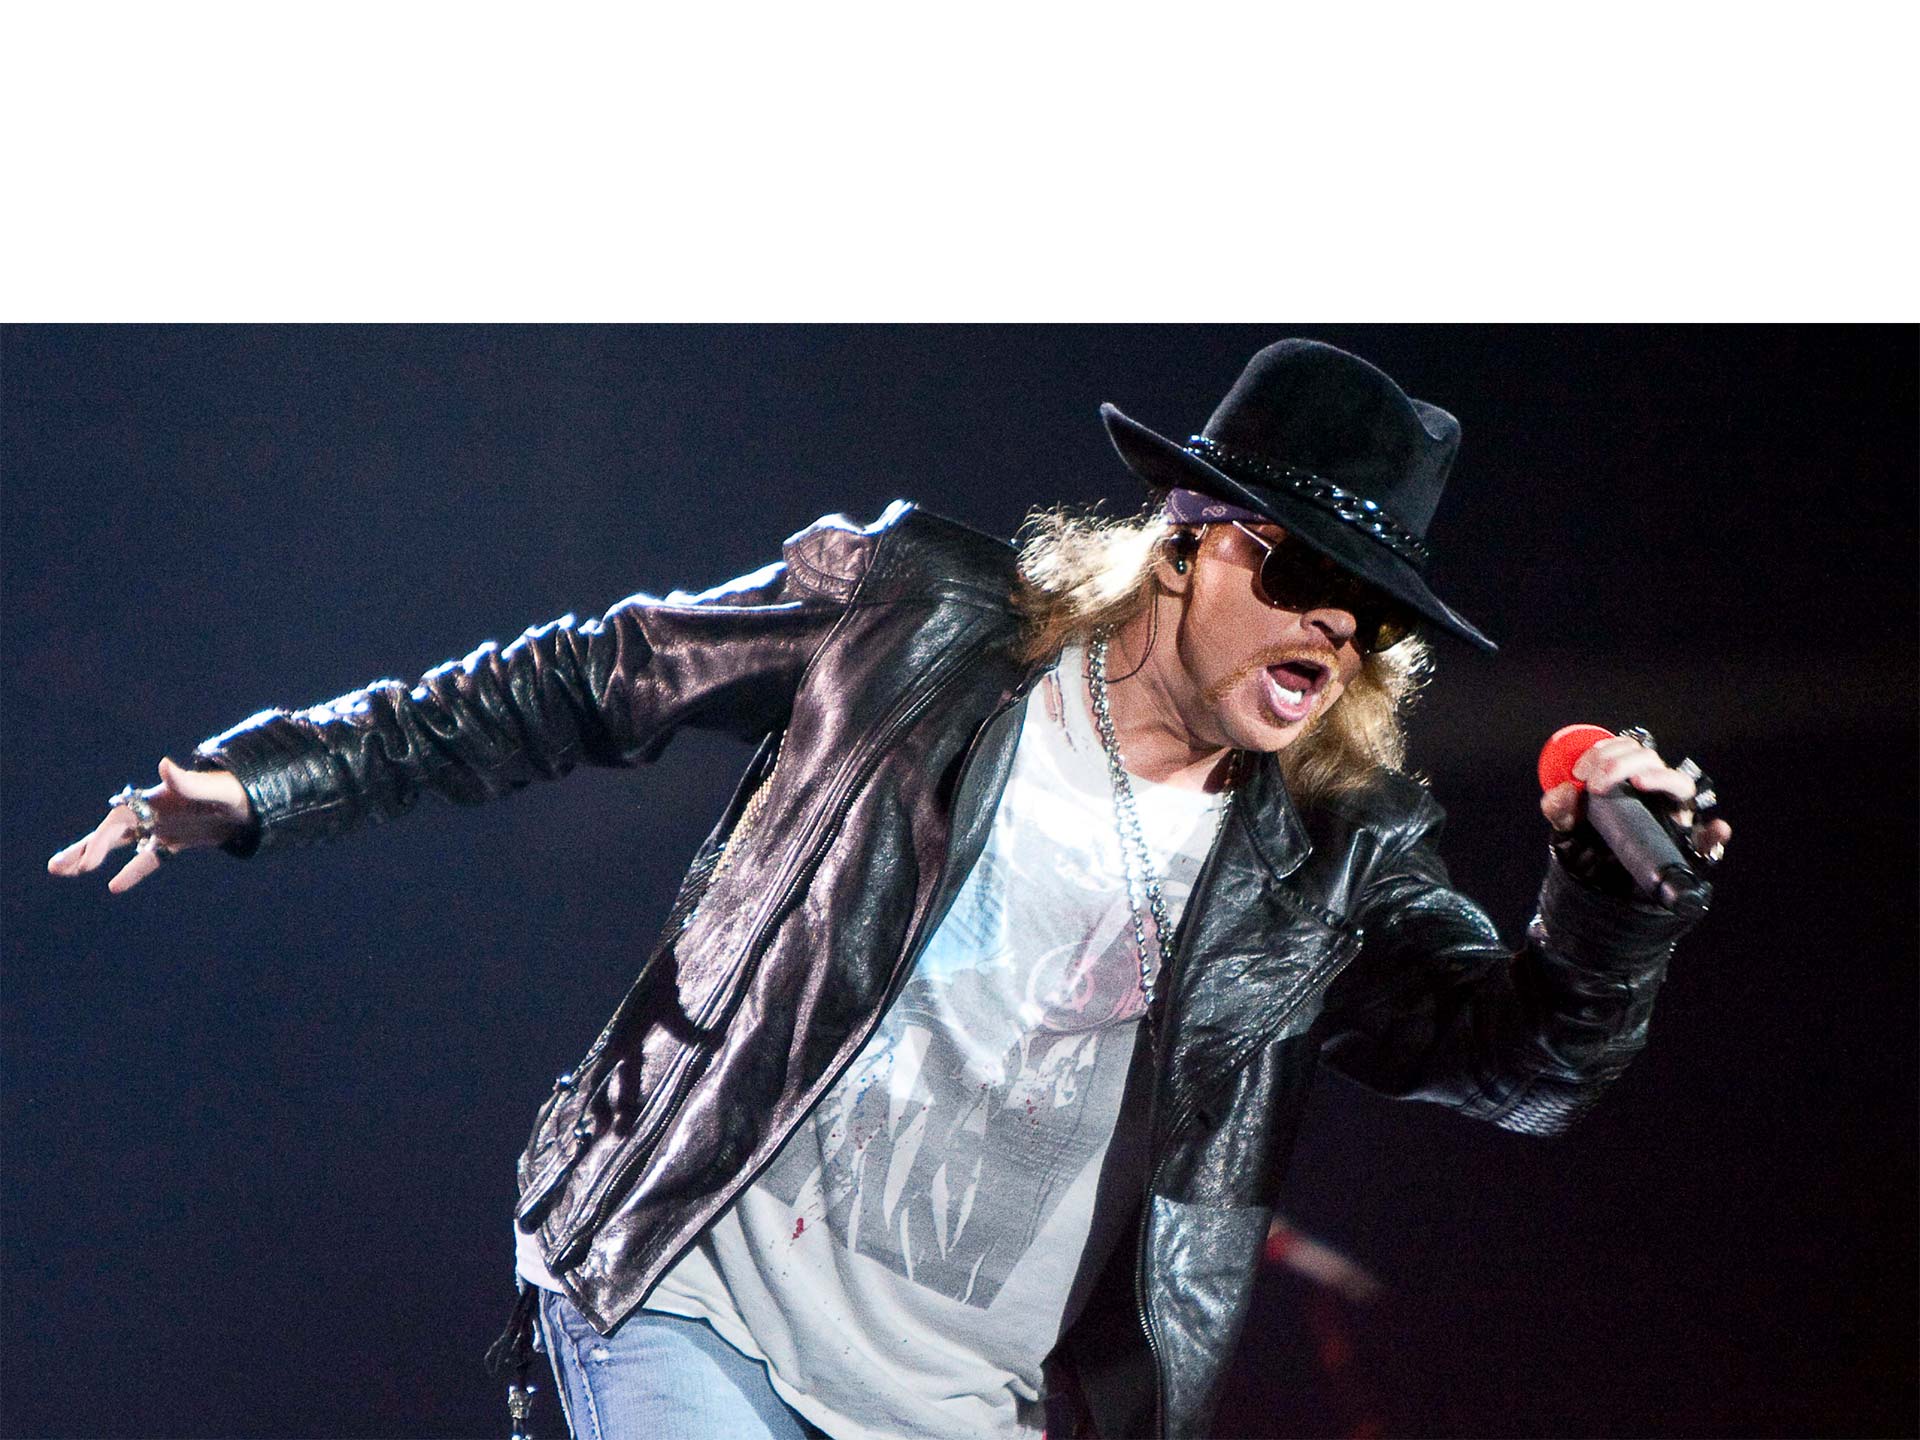 De forma exitosa, el líder de Guns N' Roses suplantó a Brian Johnson en la mítica banda de hard rock